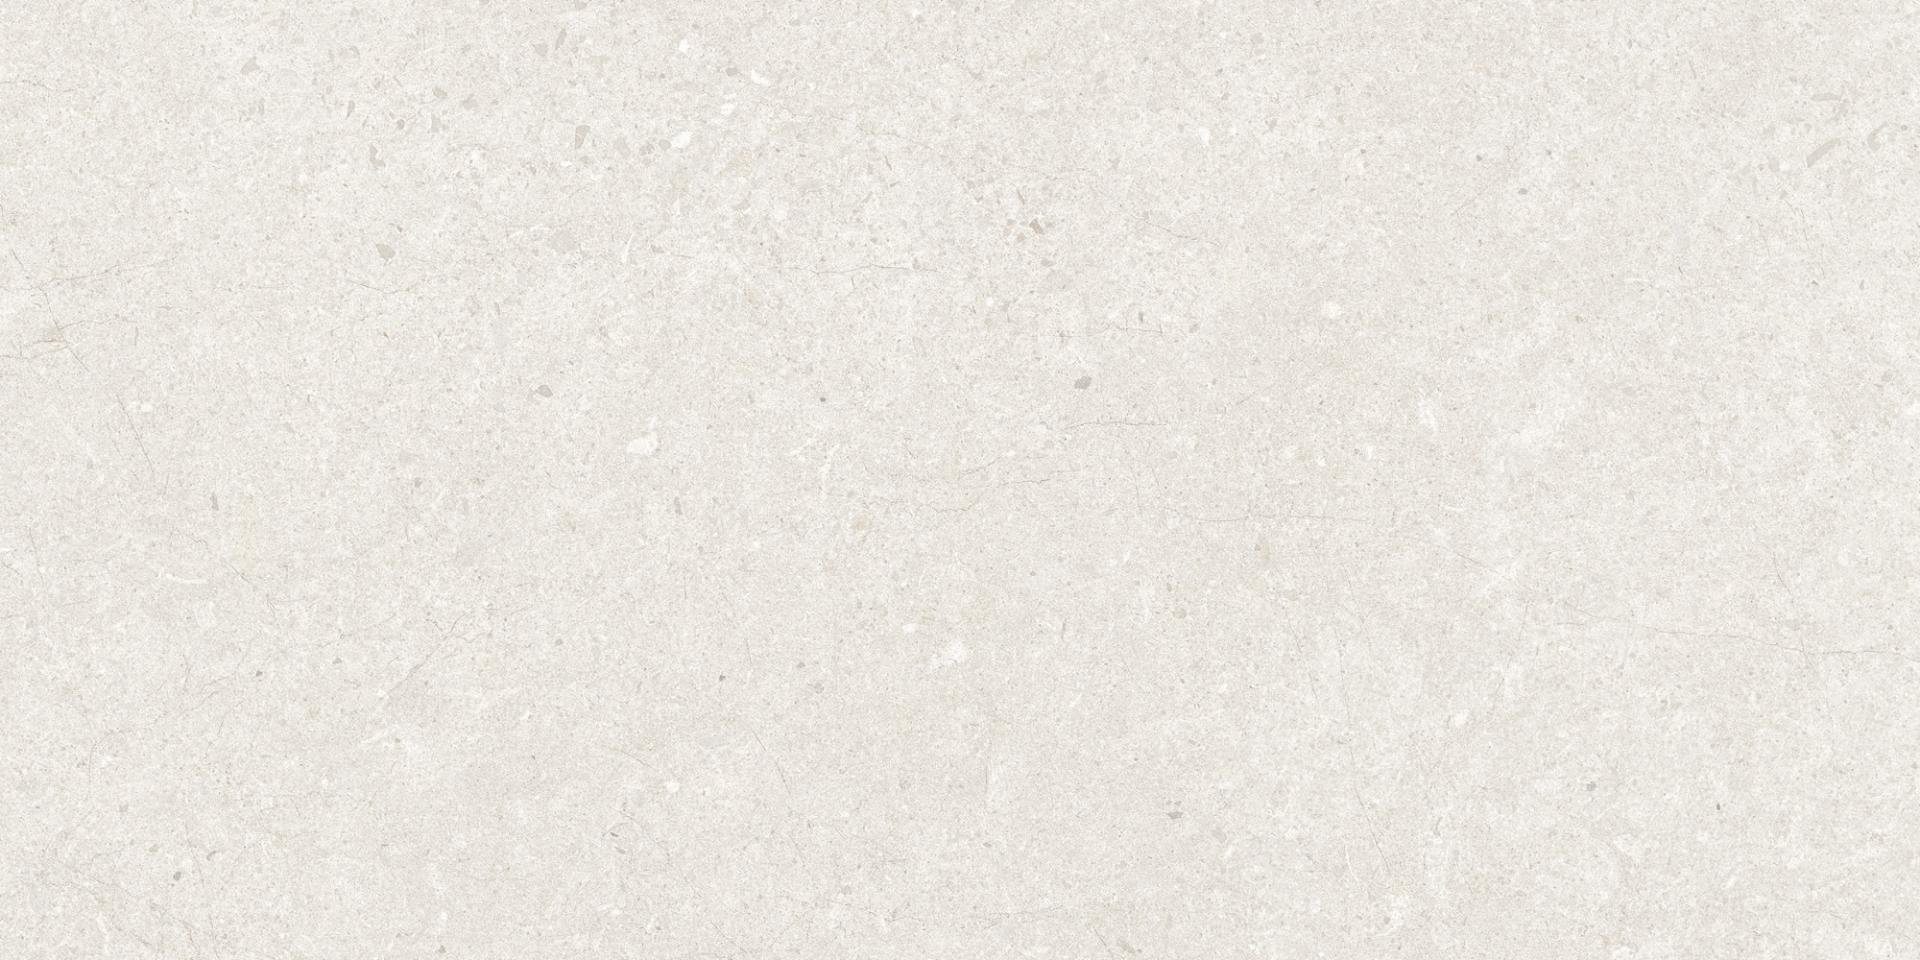 faience-aleluia-eternal-stone-30x60-1-46m2-paq-white-mat-1